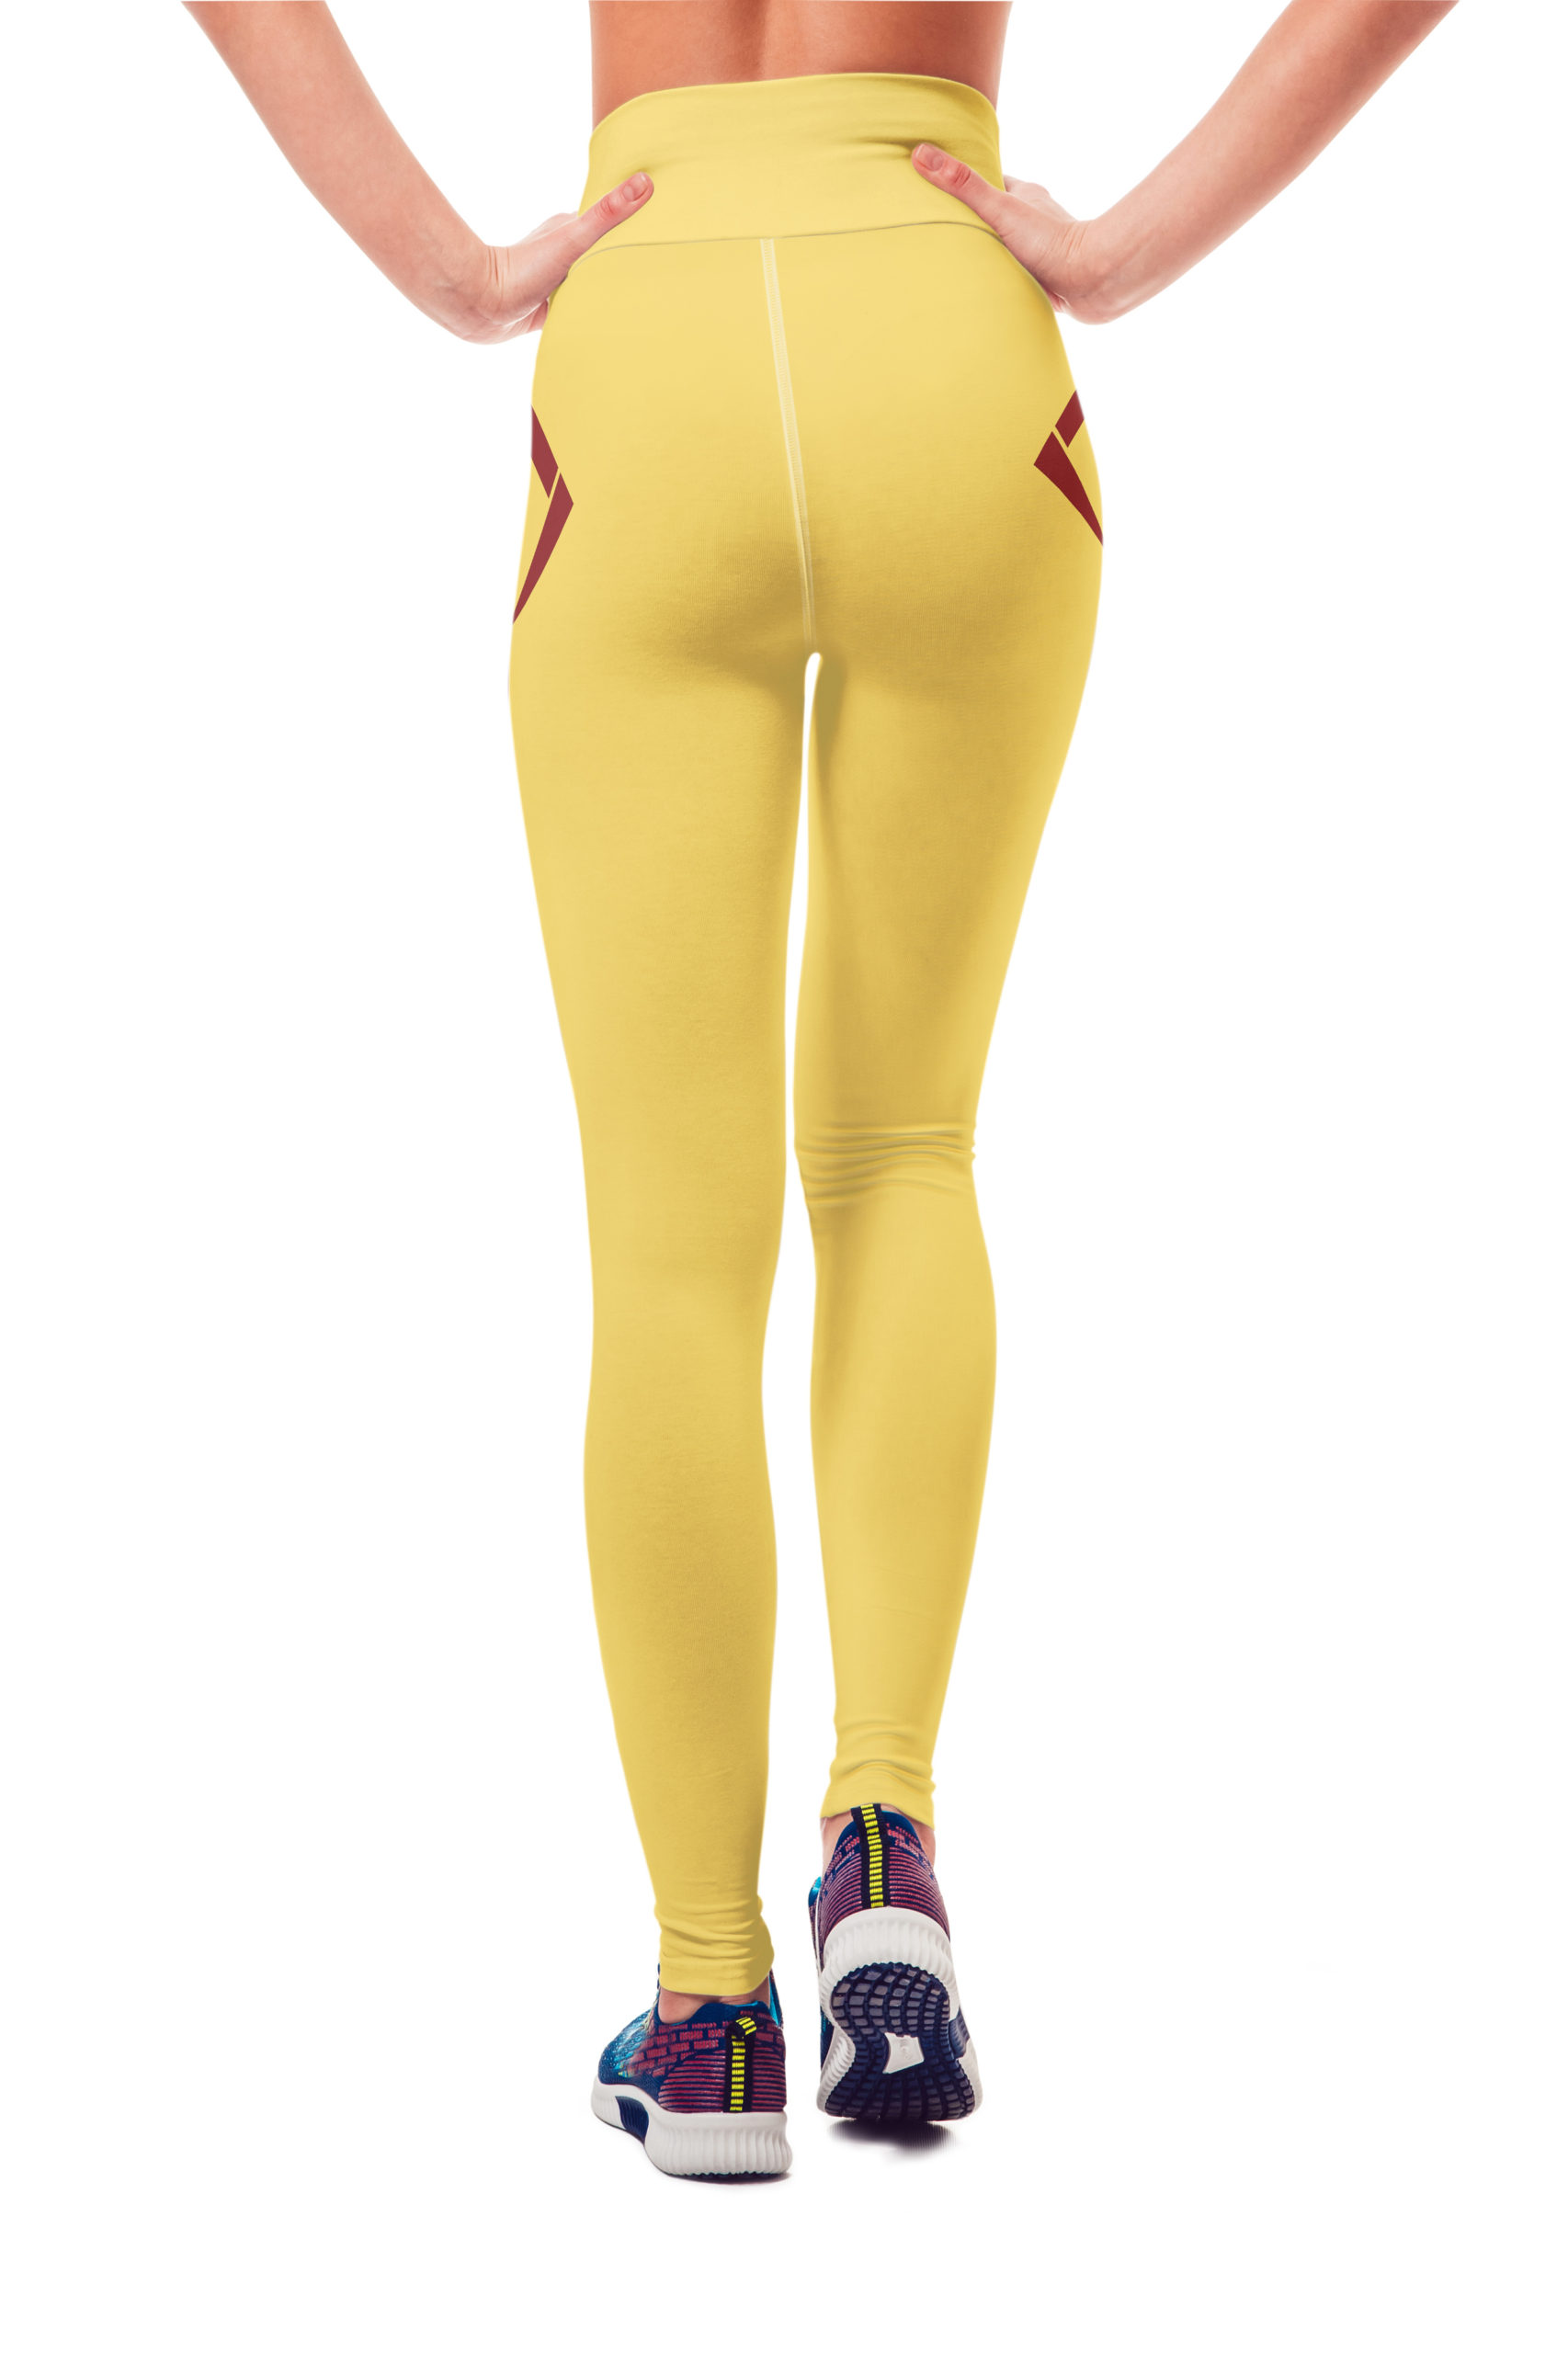 Vosenta v-line design yoga leggings yellow